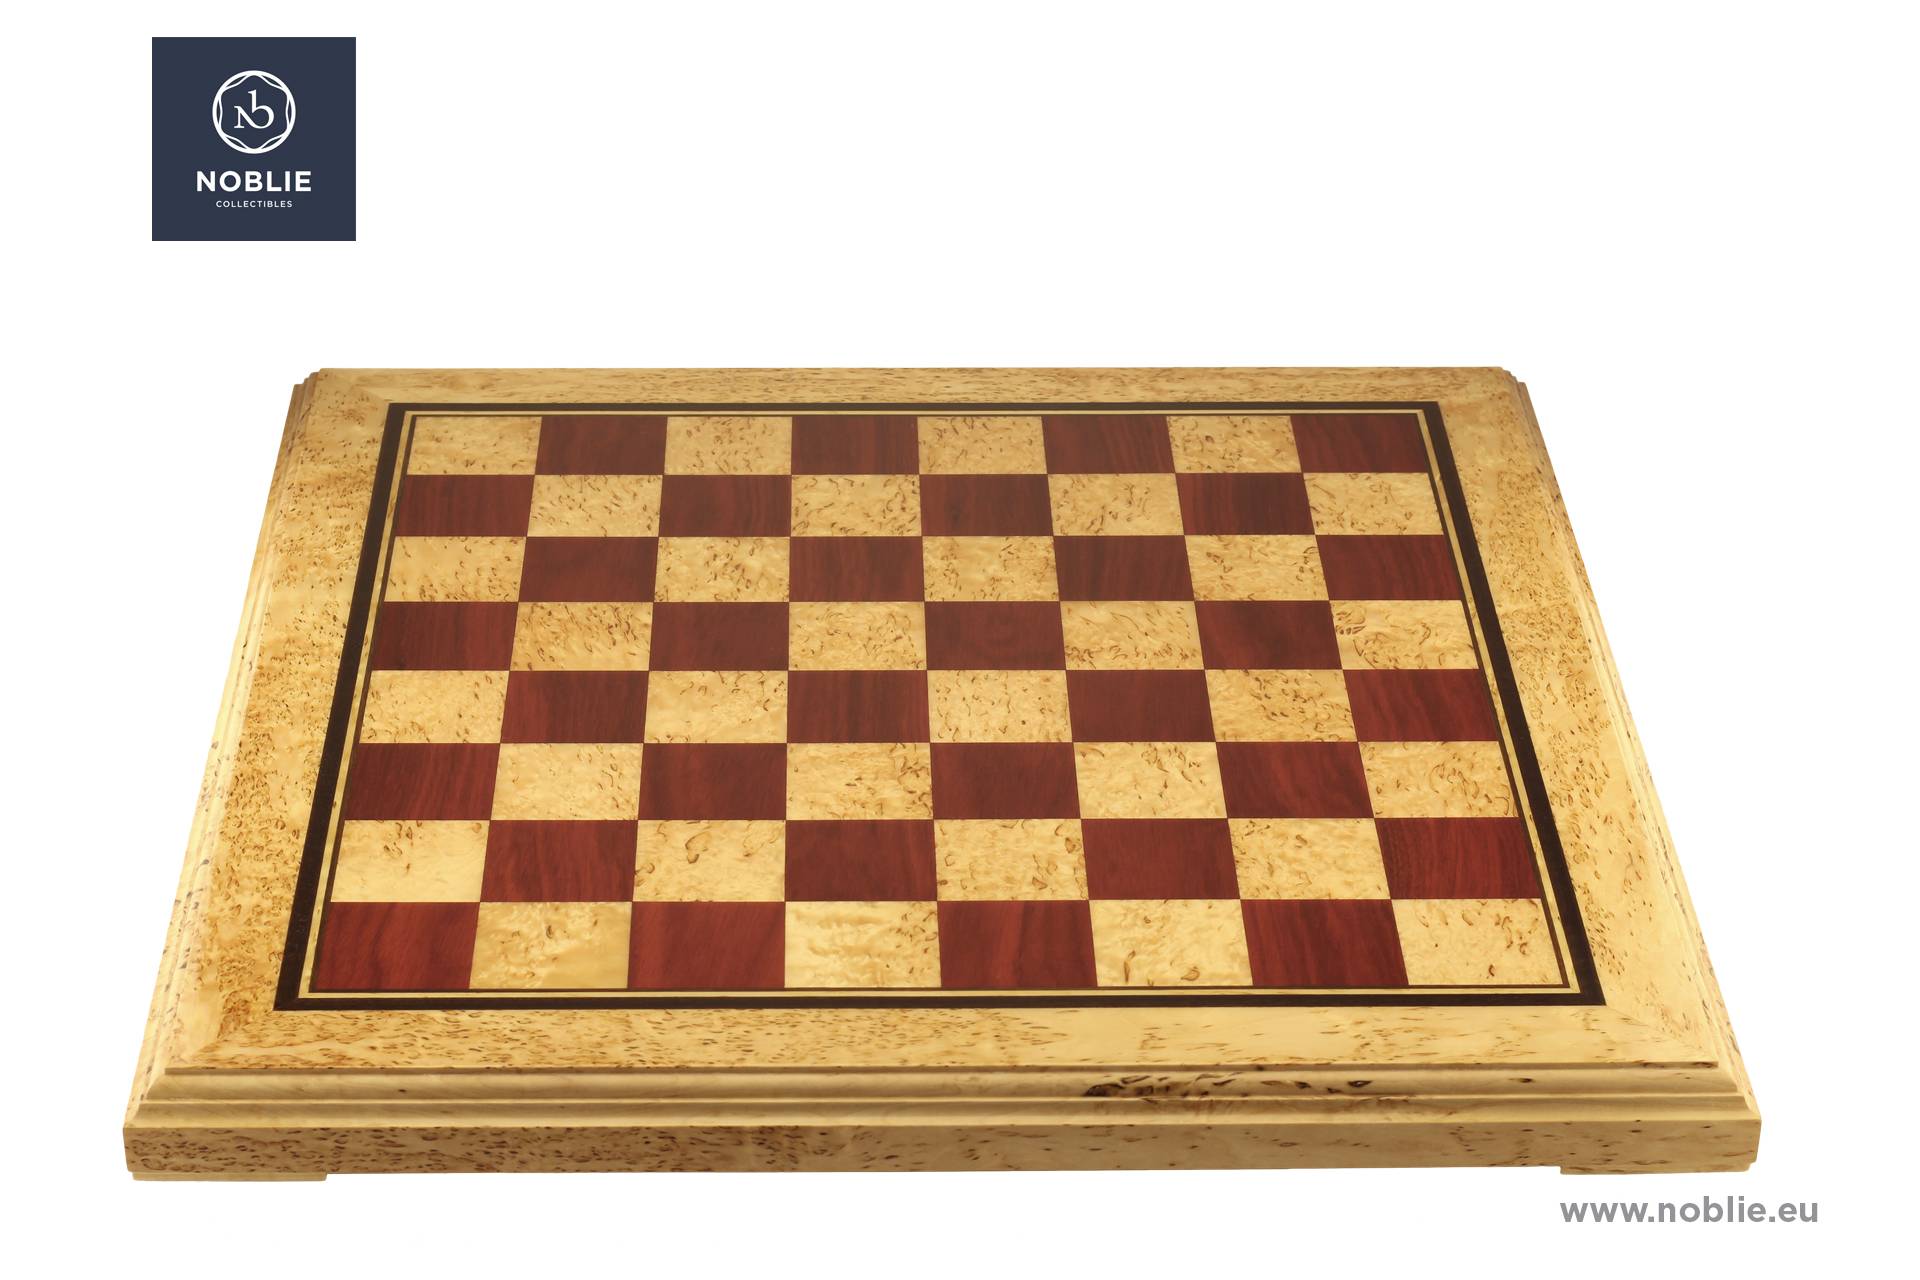 Handmade luxury chessboard